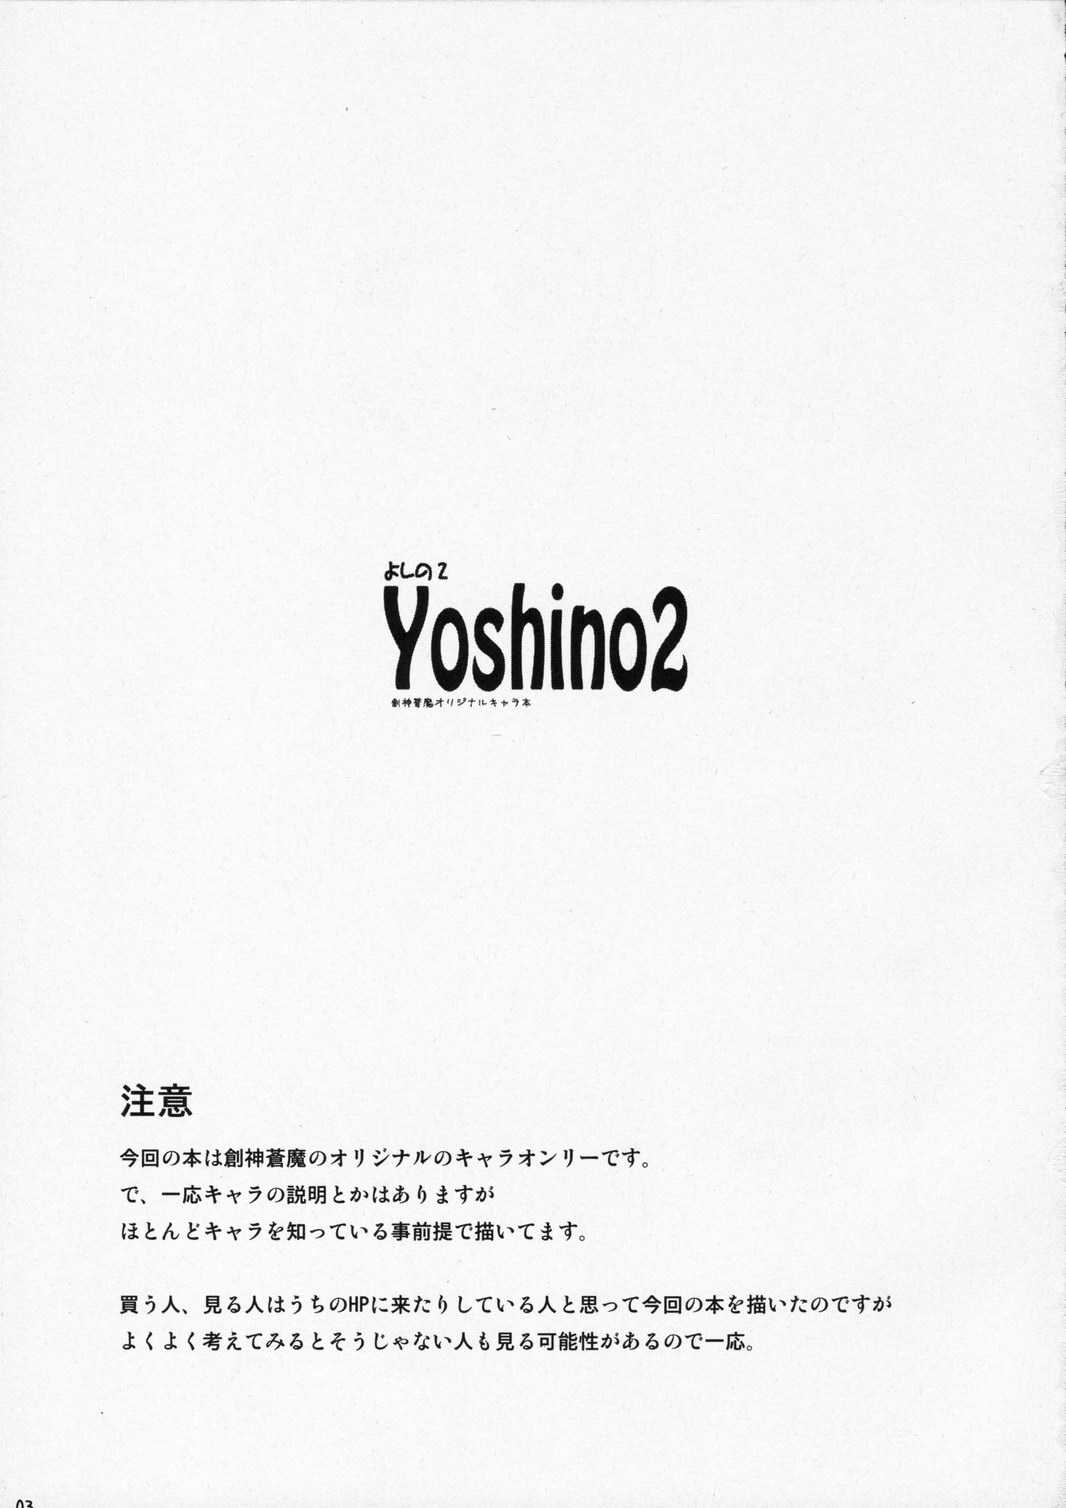 yoshino2 [Japan] 